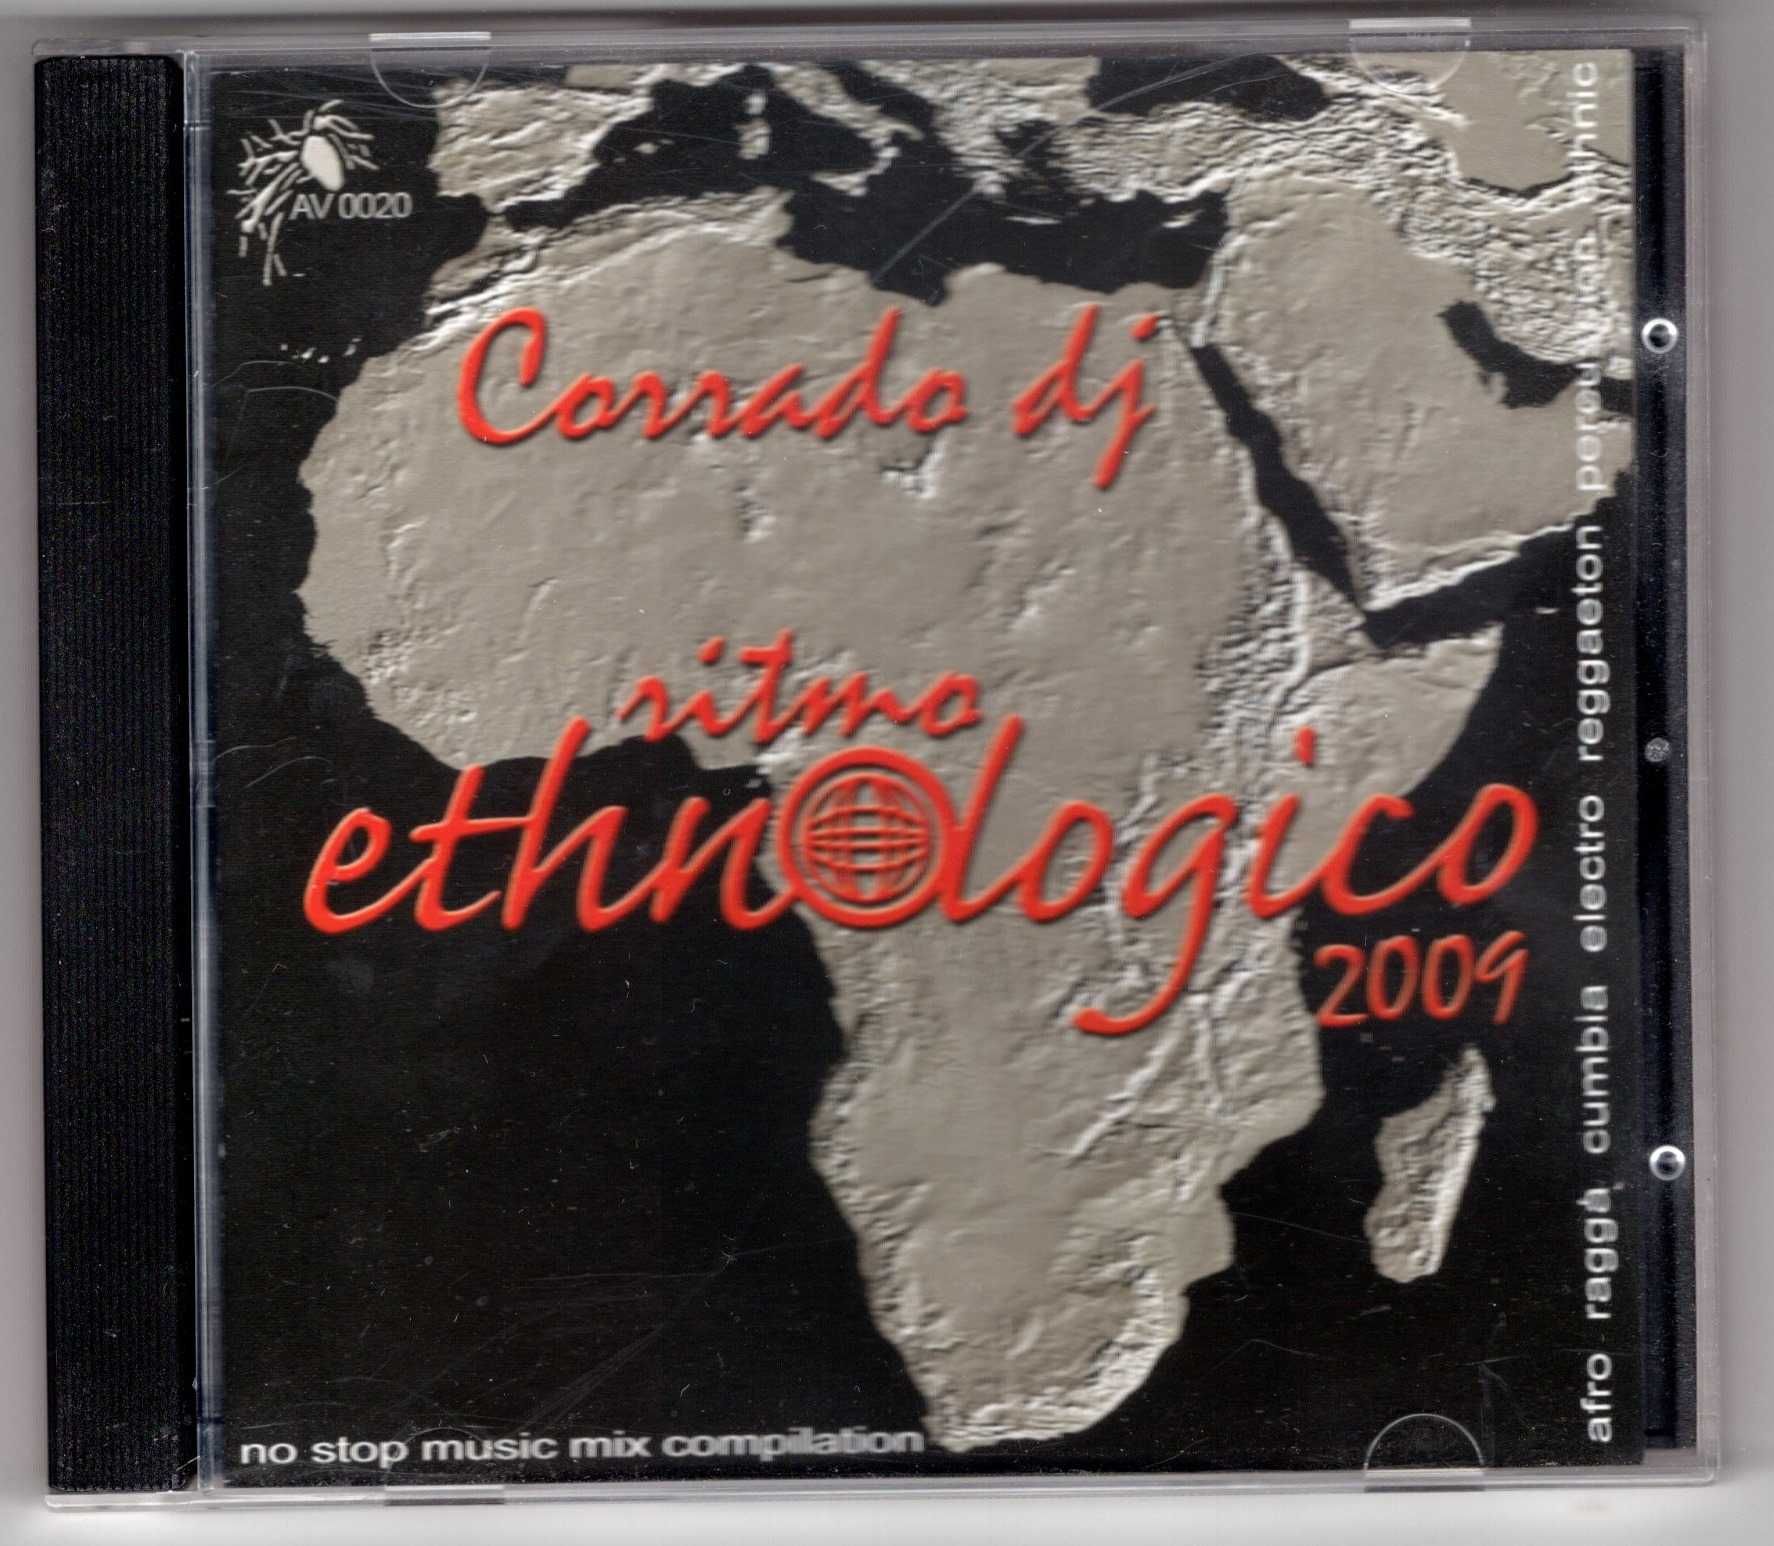 Corrado DJ - Ritmo Ethnologico 2009 (CD)